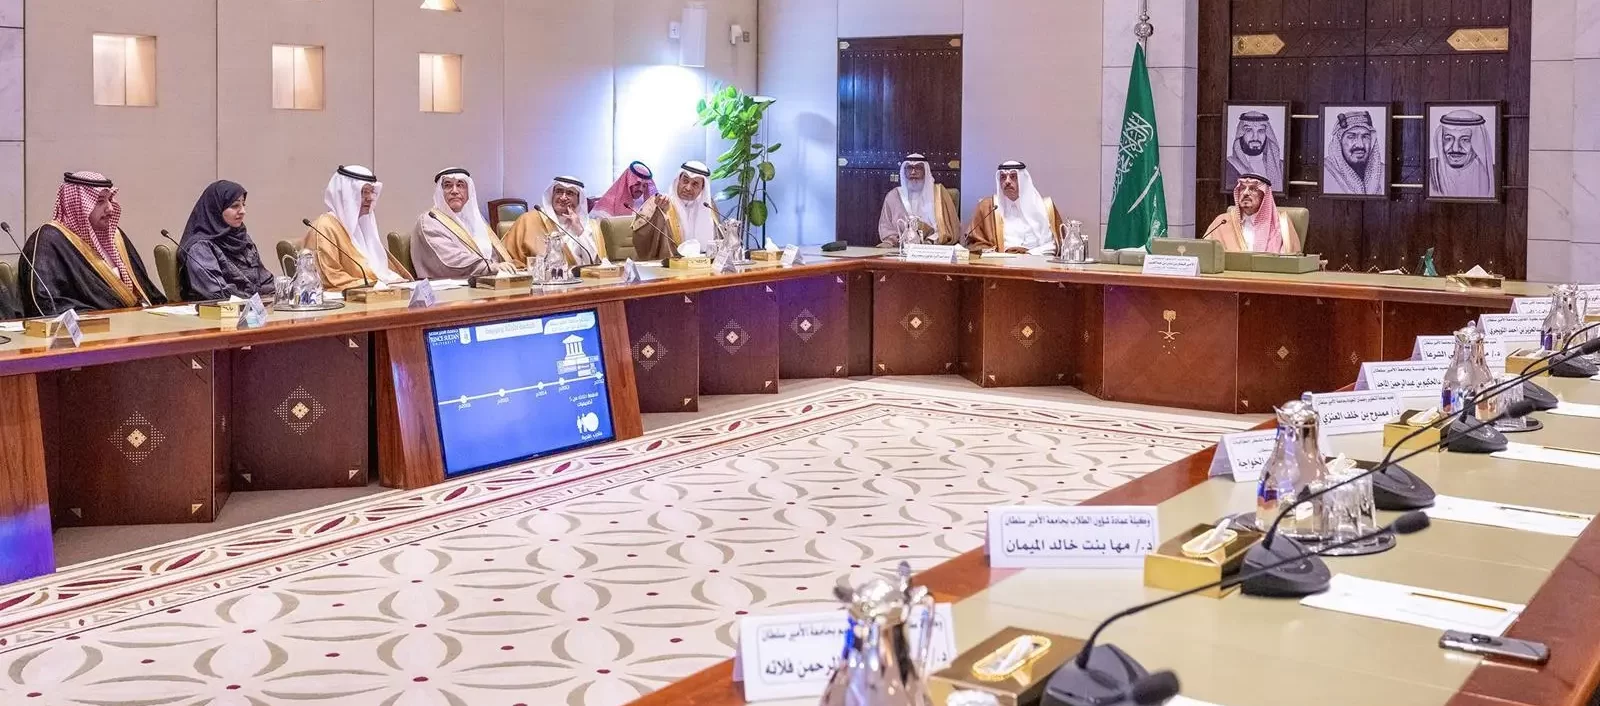 أمير الرياض يناقش مشروعات جامعة الأمير سلطان الحالية والمستقبلية